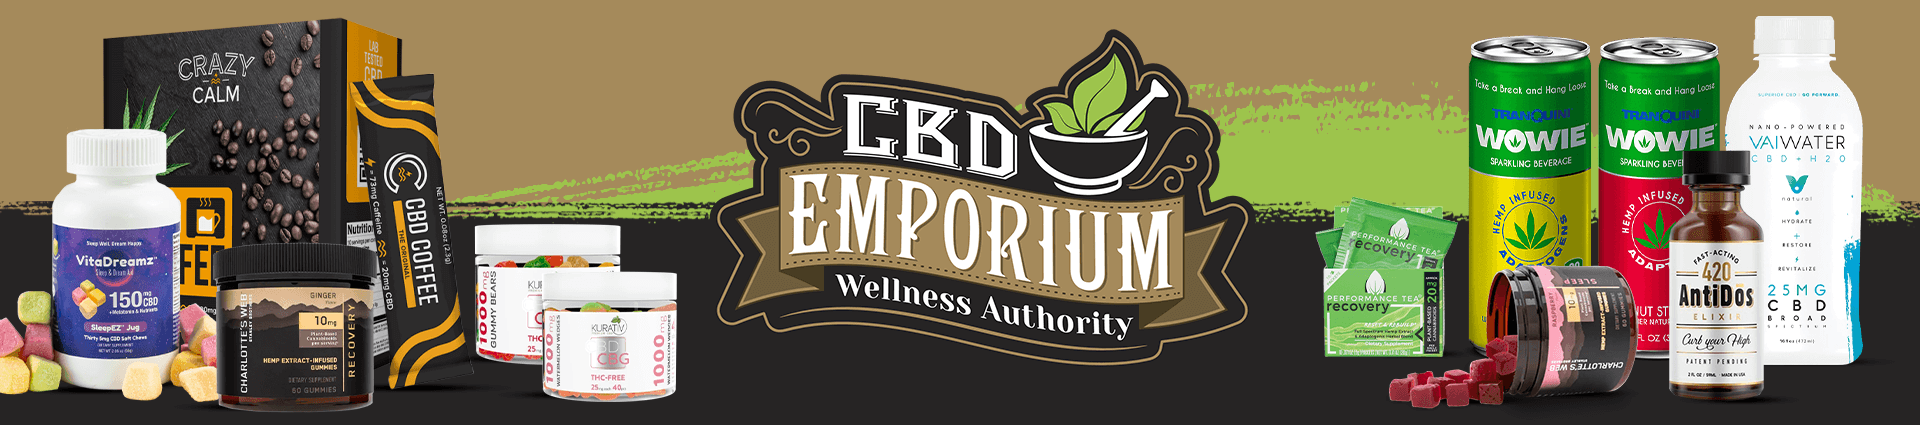 CBD Edibles & Beverages from CBD Emporium